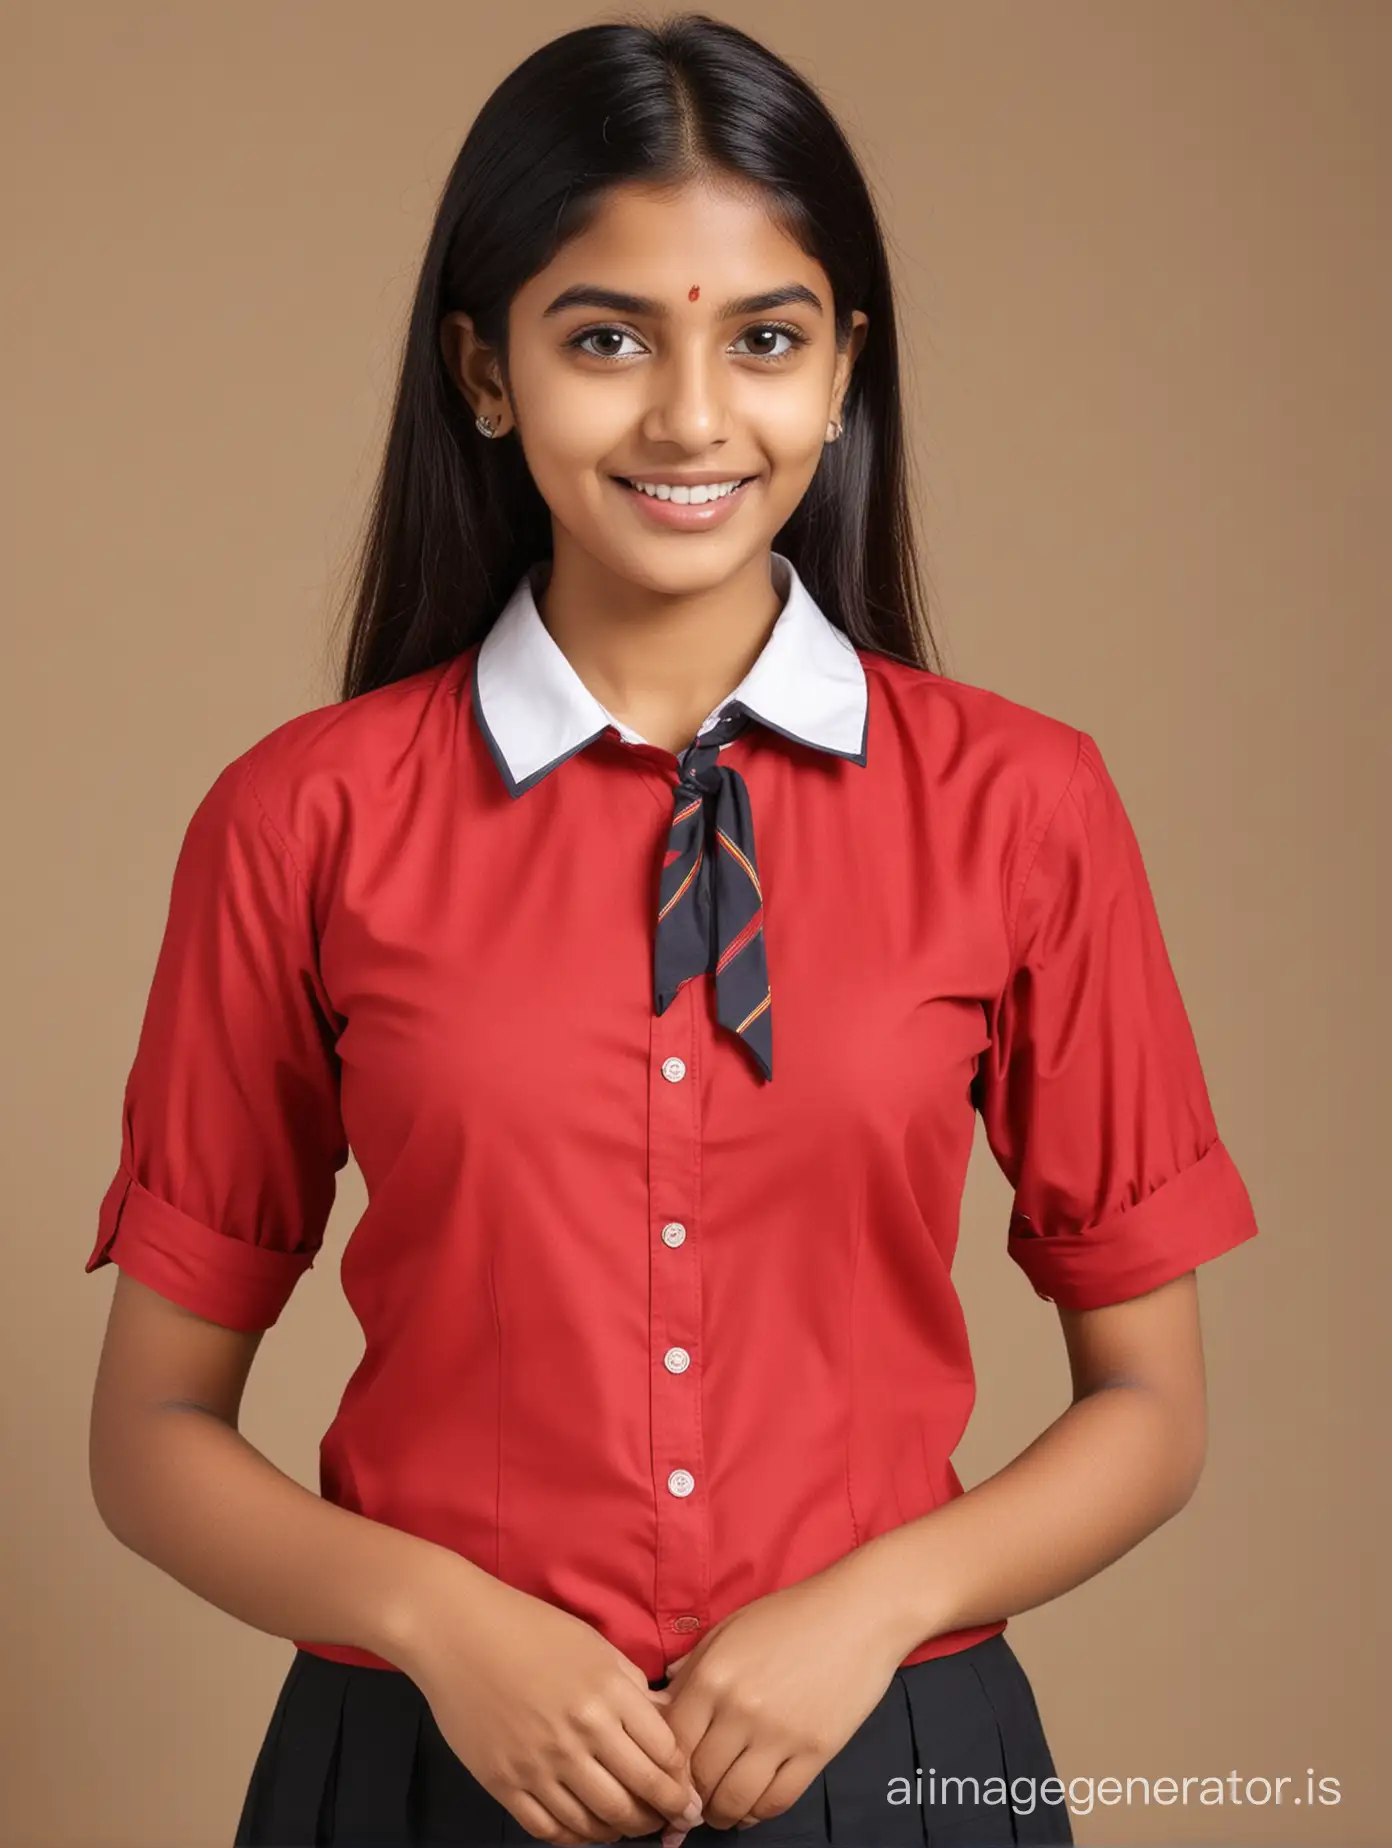 indian schoolgirl in red blouse